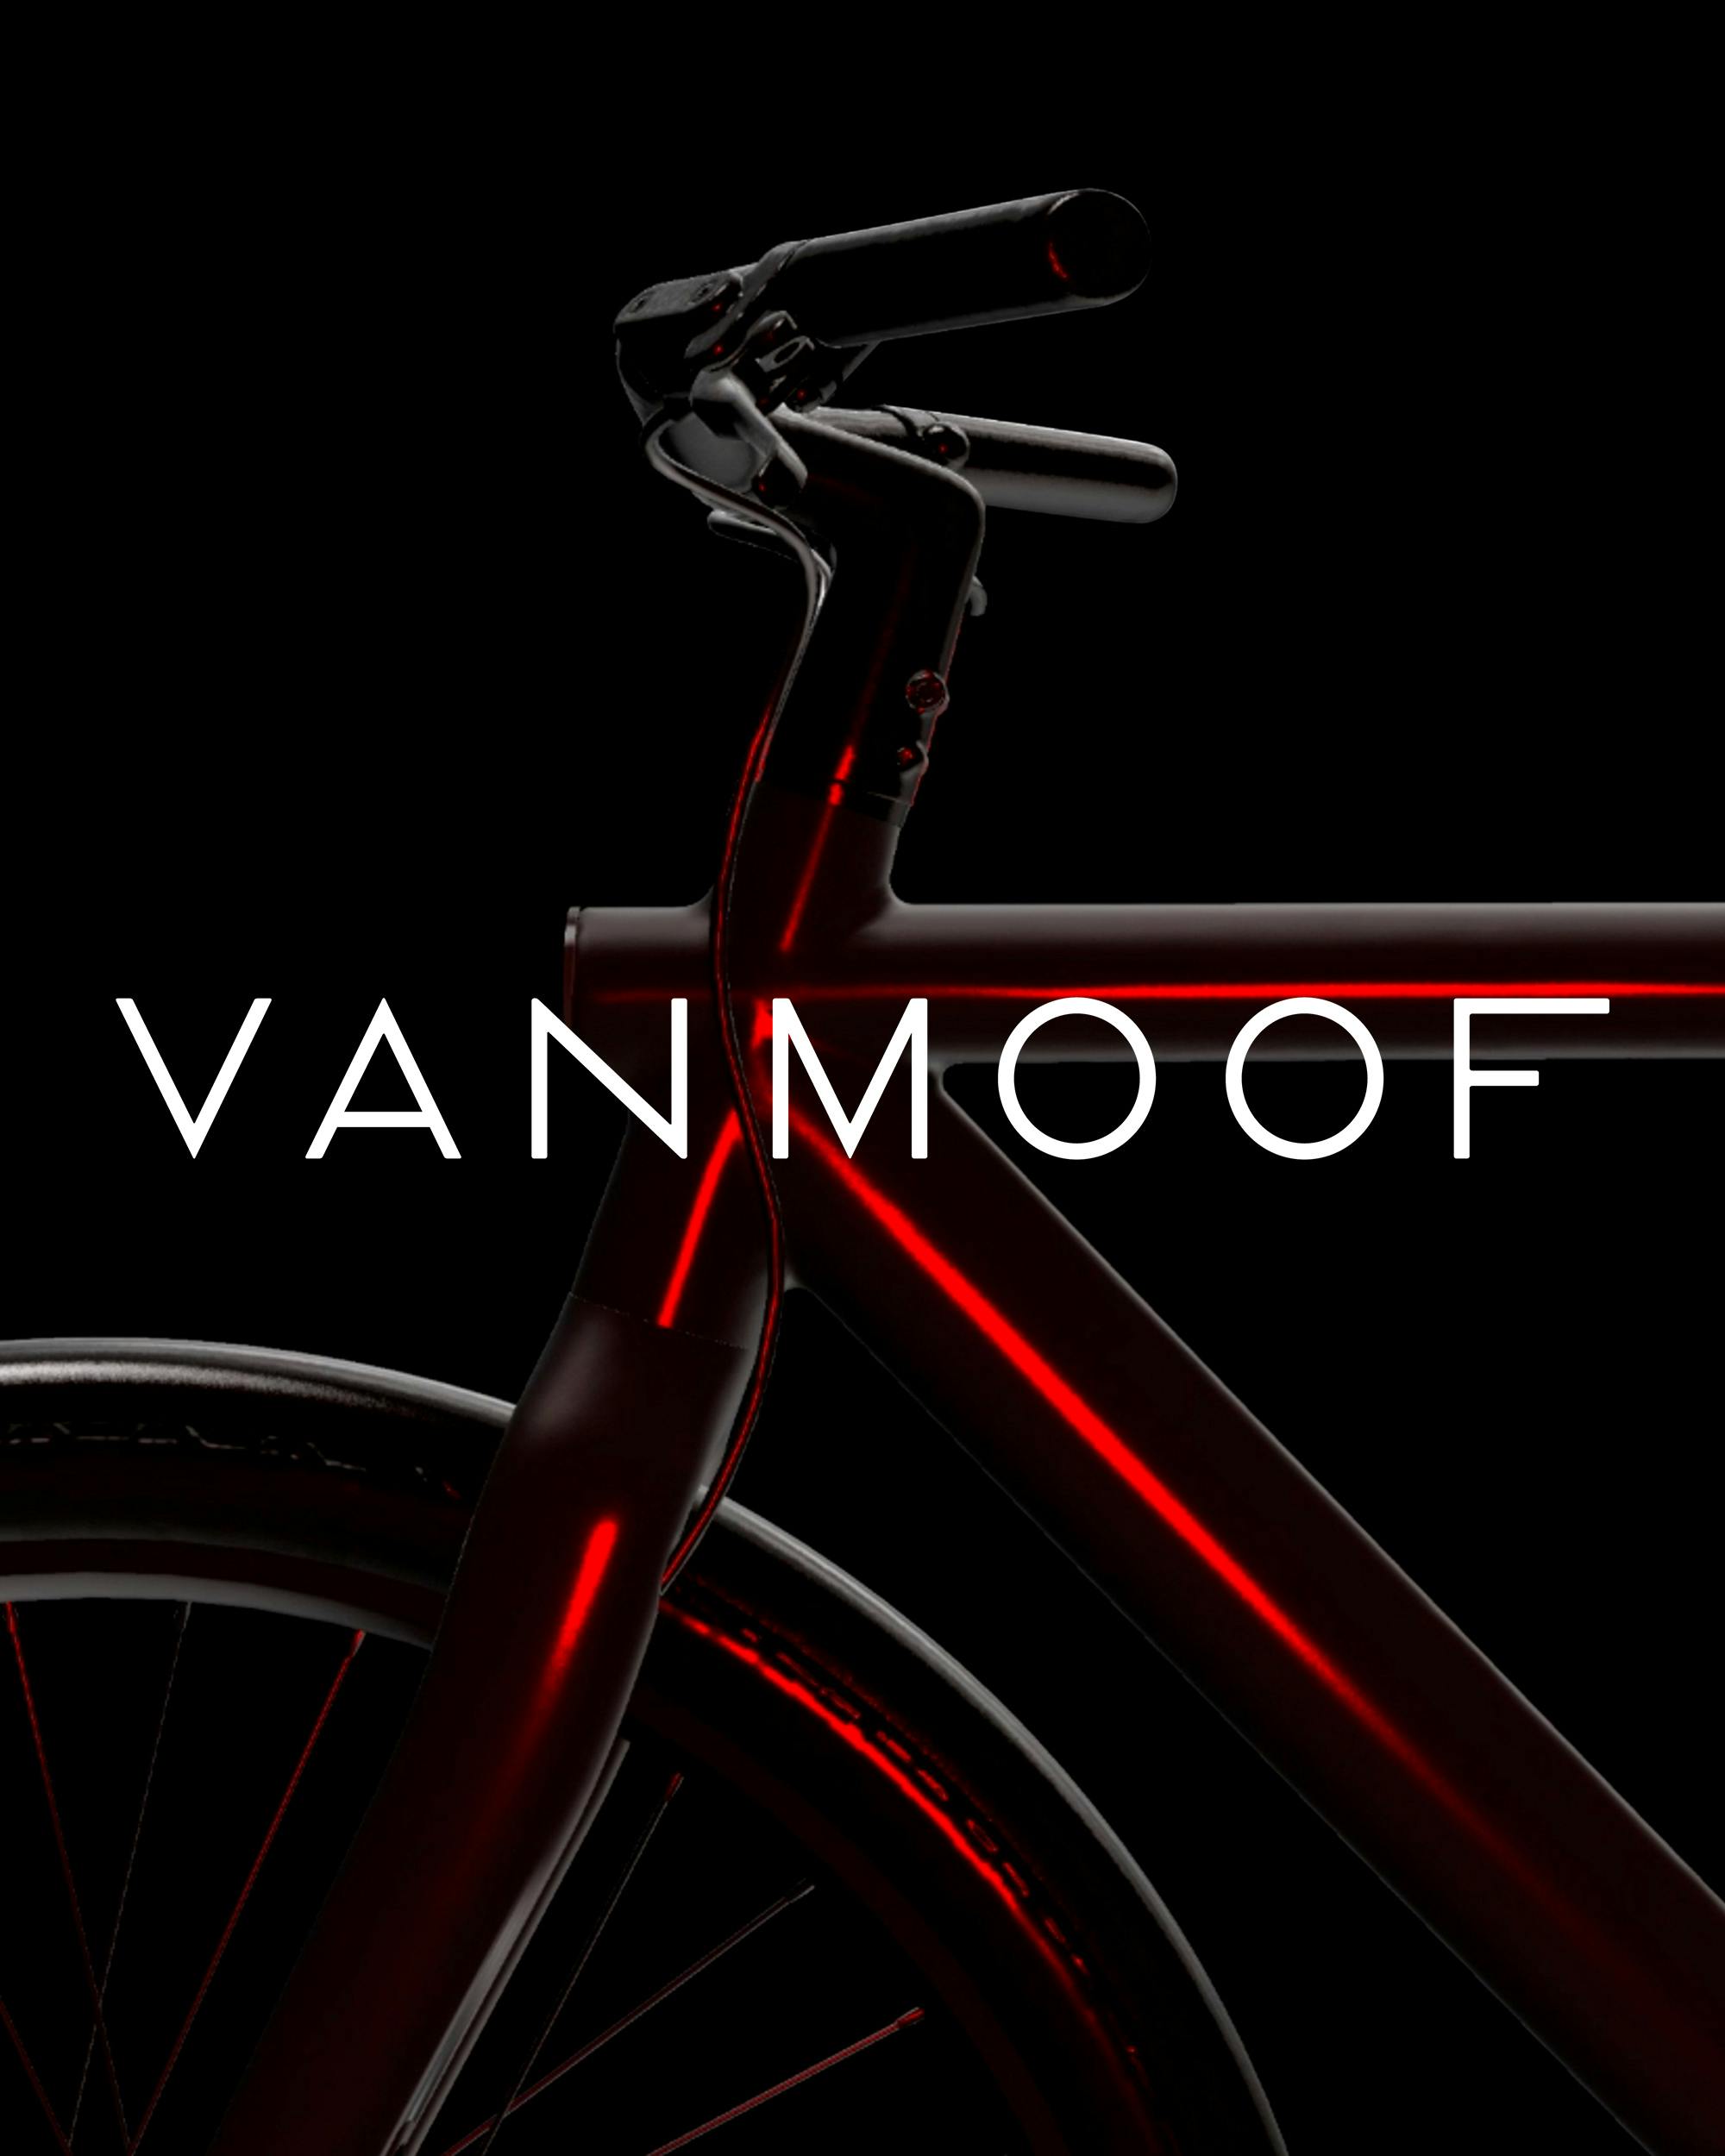 VanMoof live online launch event